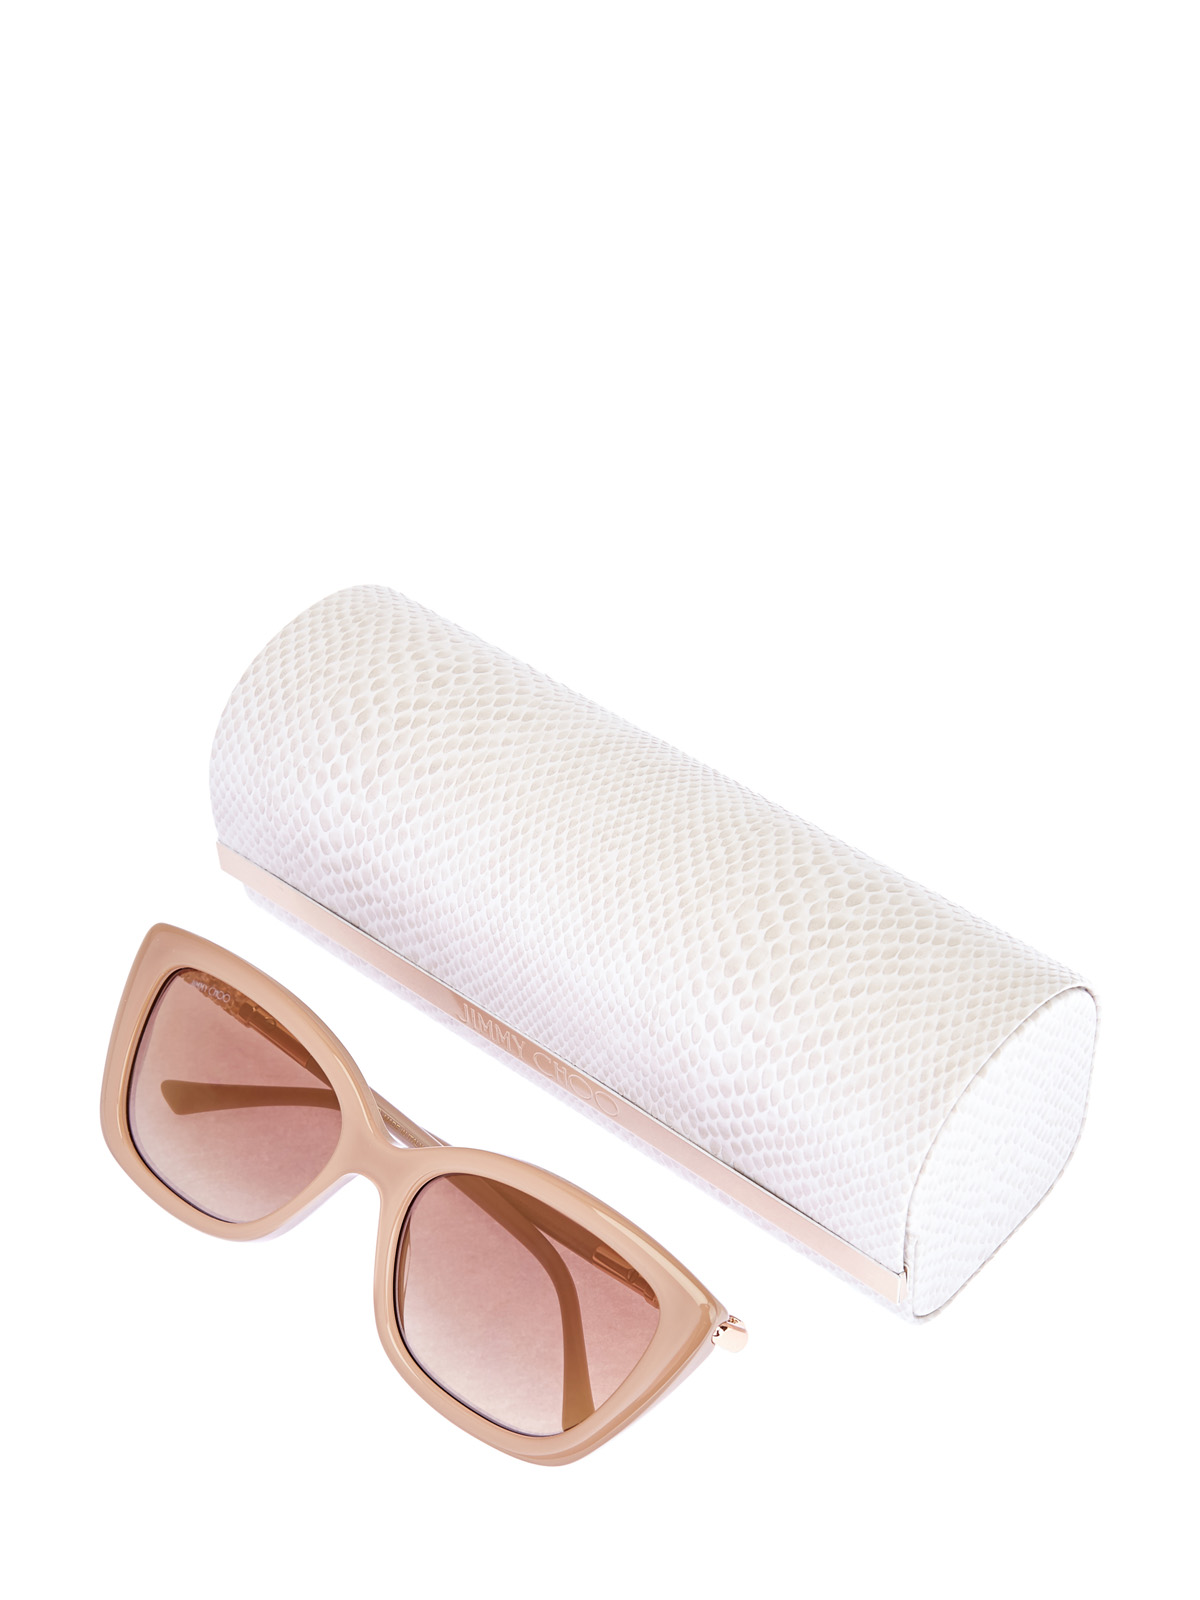 Солнцезащитные очки Adahs с мерцающей отделкой JIMMY CHOO  (sunglasses), цвет бежевый, размер S;M;L - фото 4